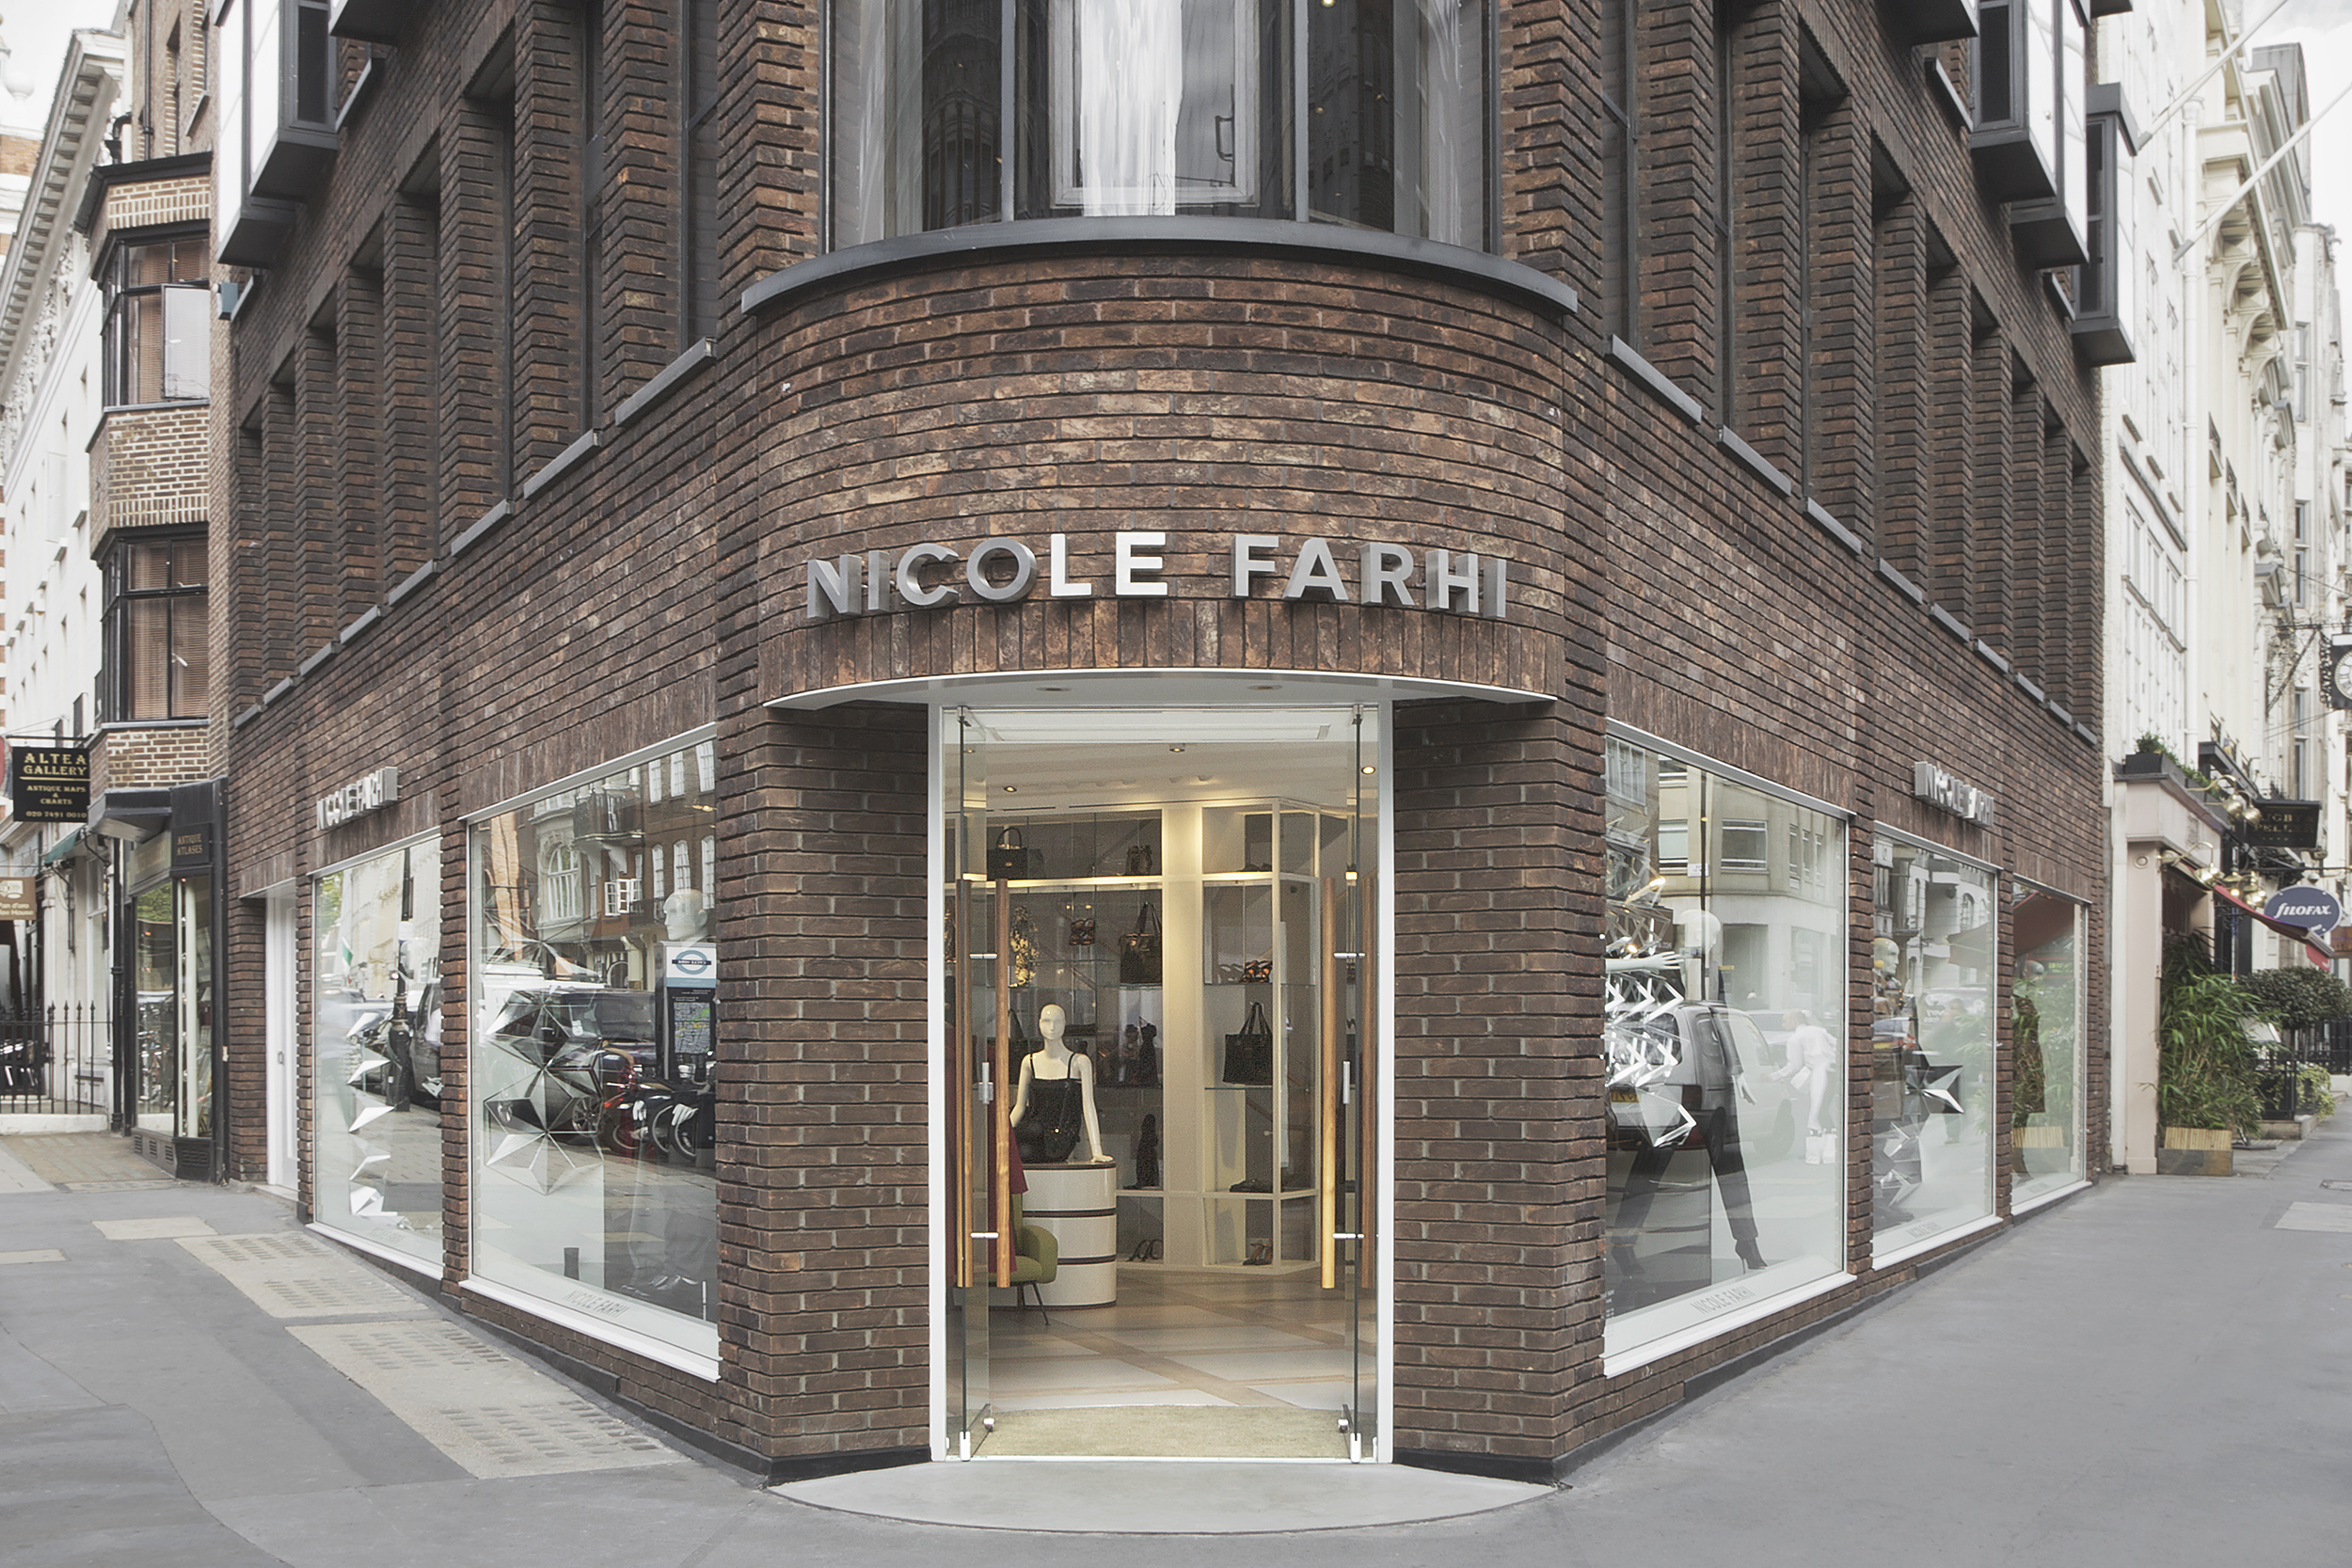  Nicole Farhi, London, Universal Design Studio 